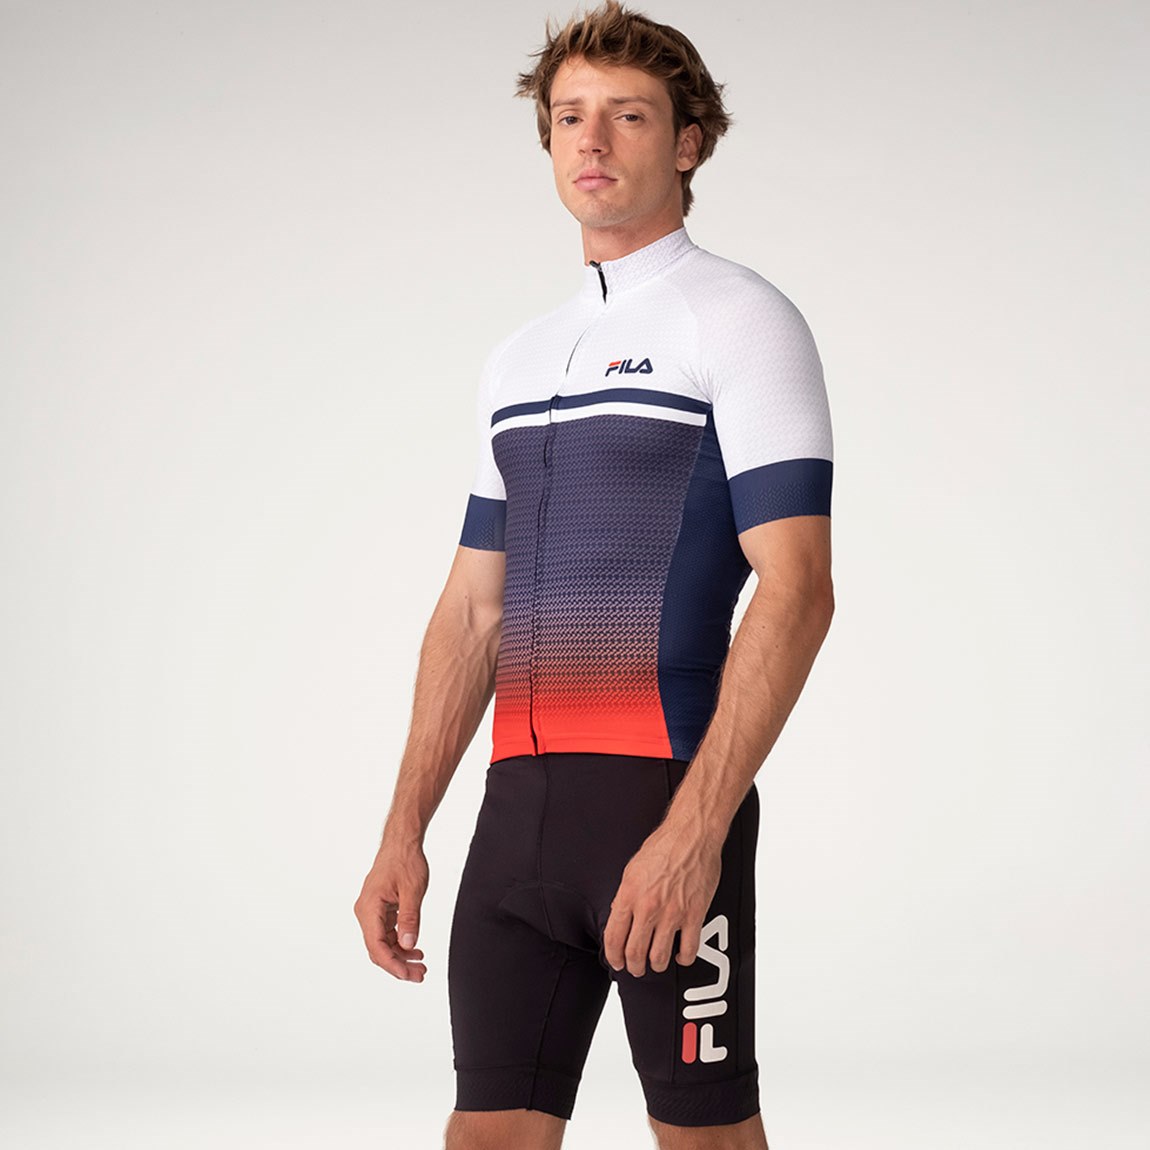 0008552_fila-camiseta-masculina-cycling-blanco-marino